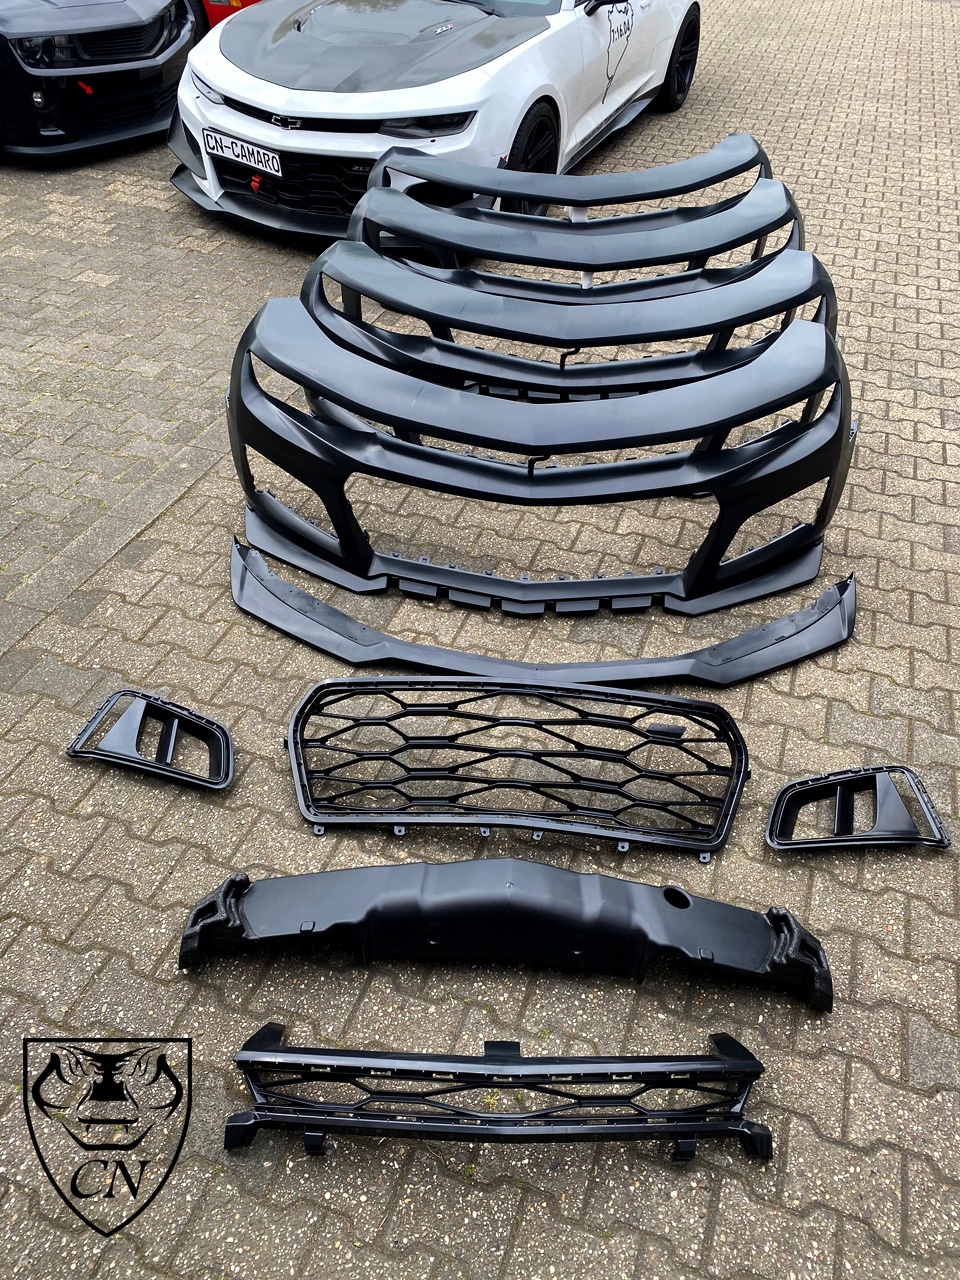 Kantenschutz für Türen / Kofferraumh. - CN Racing GmbH - Camaro-Tuning